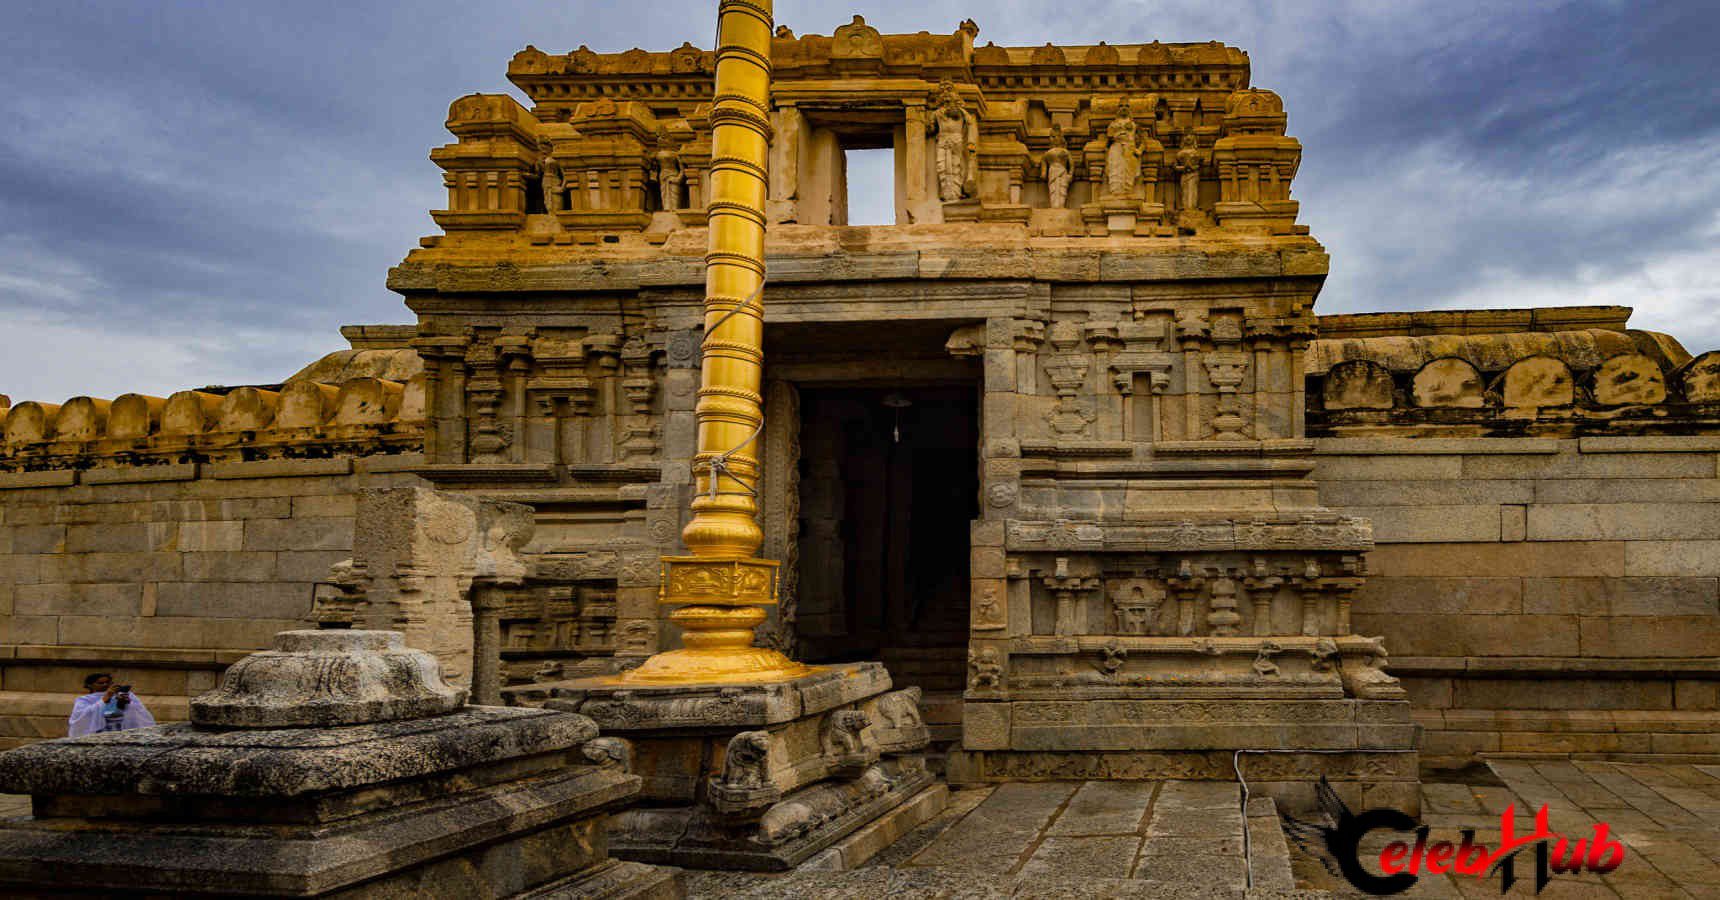 Shri veerabhadra temple